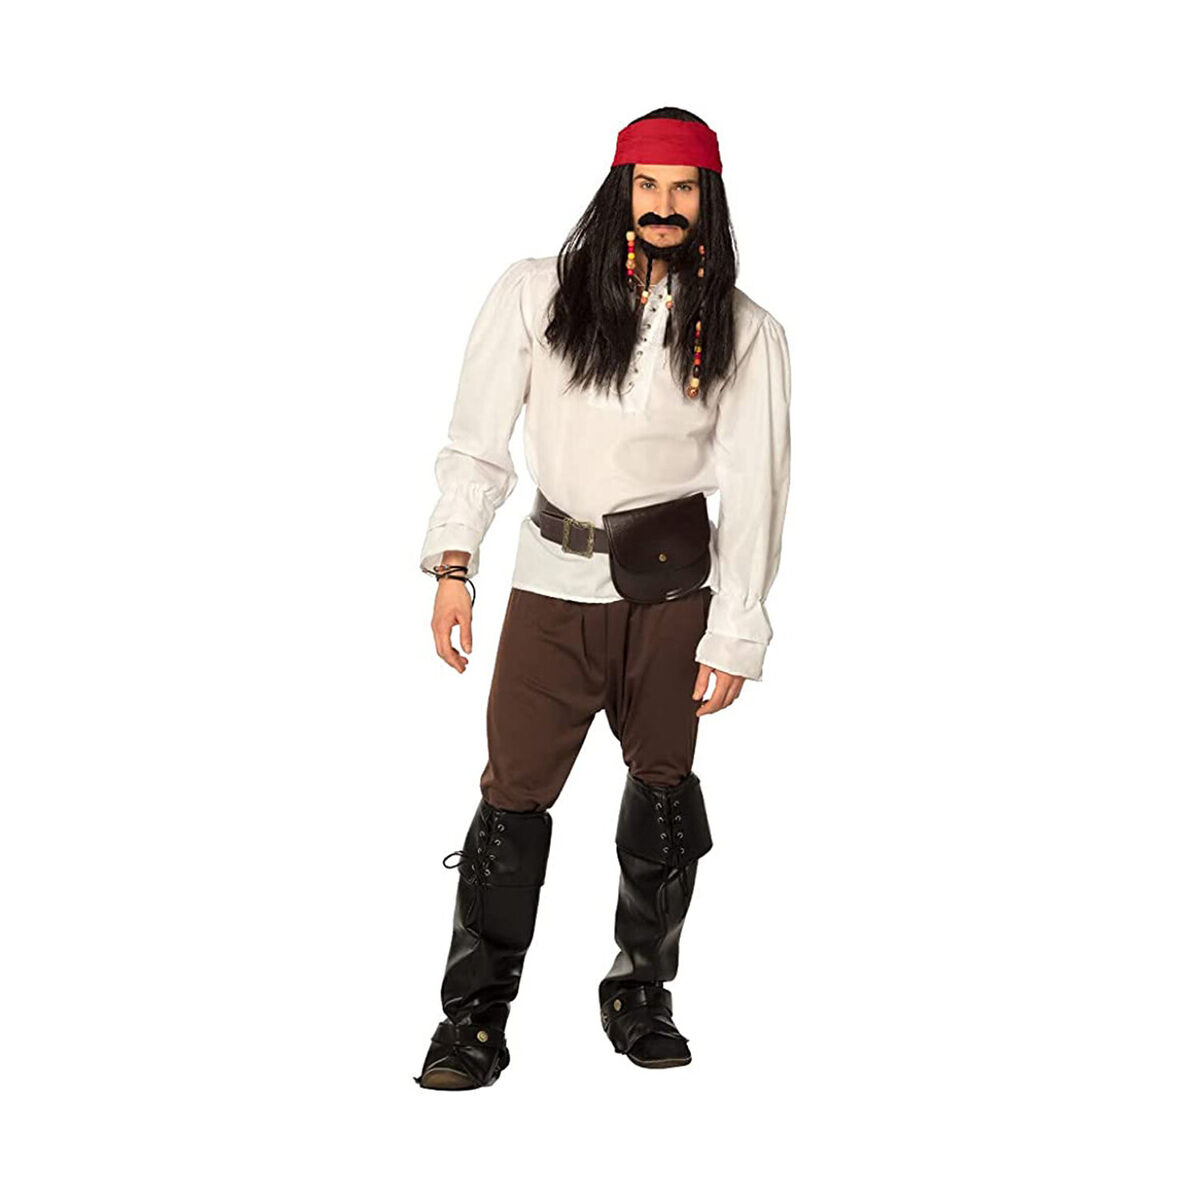 Parrucca da pirata con bandana rossa per 12,25 €